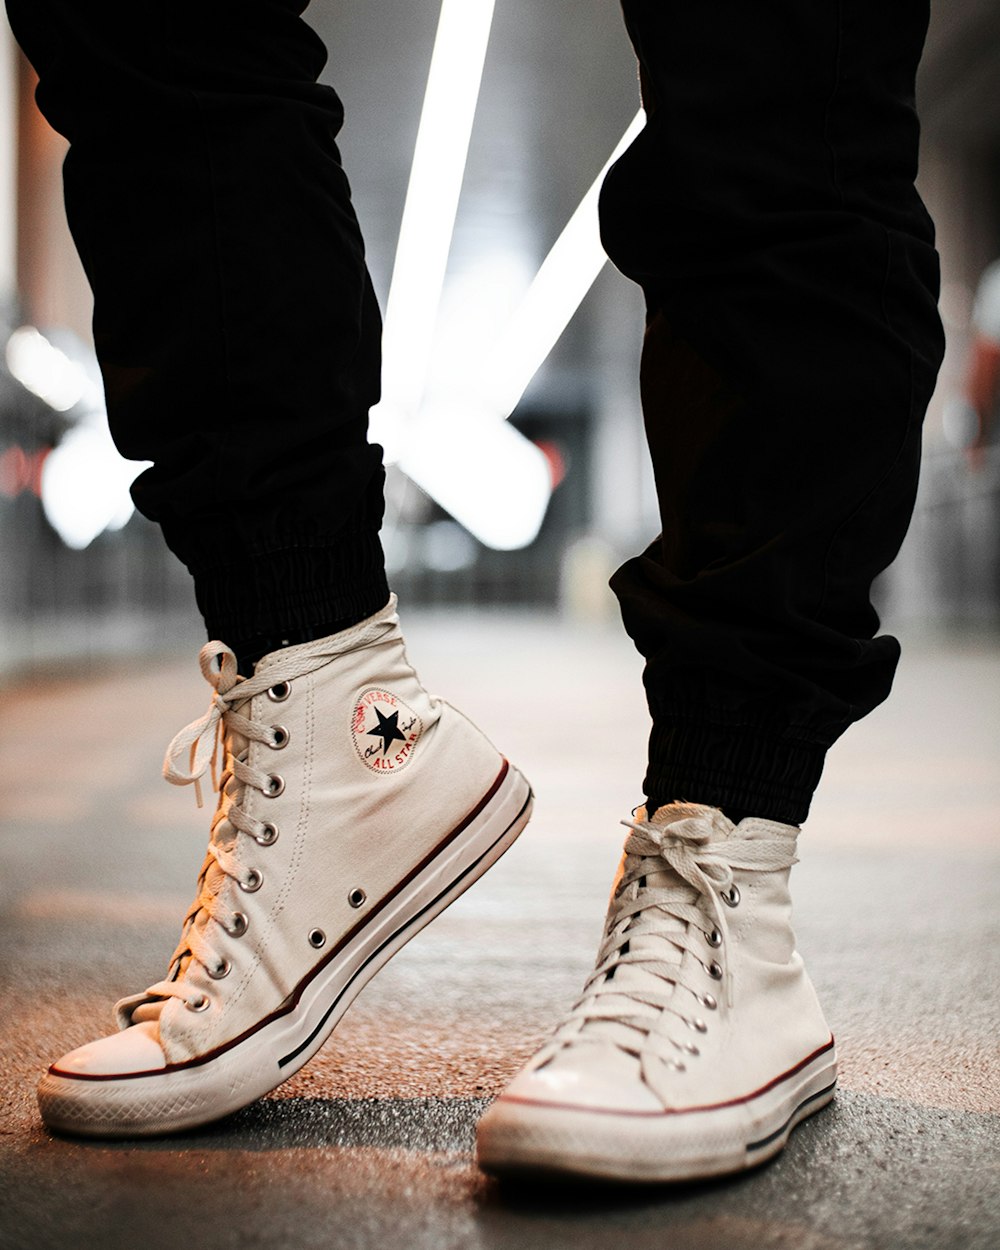 Foto Persona en zapatillas altas converse all star marrones – Imagen Dubai,  emiratos arabes unidos gratis en Unsplash